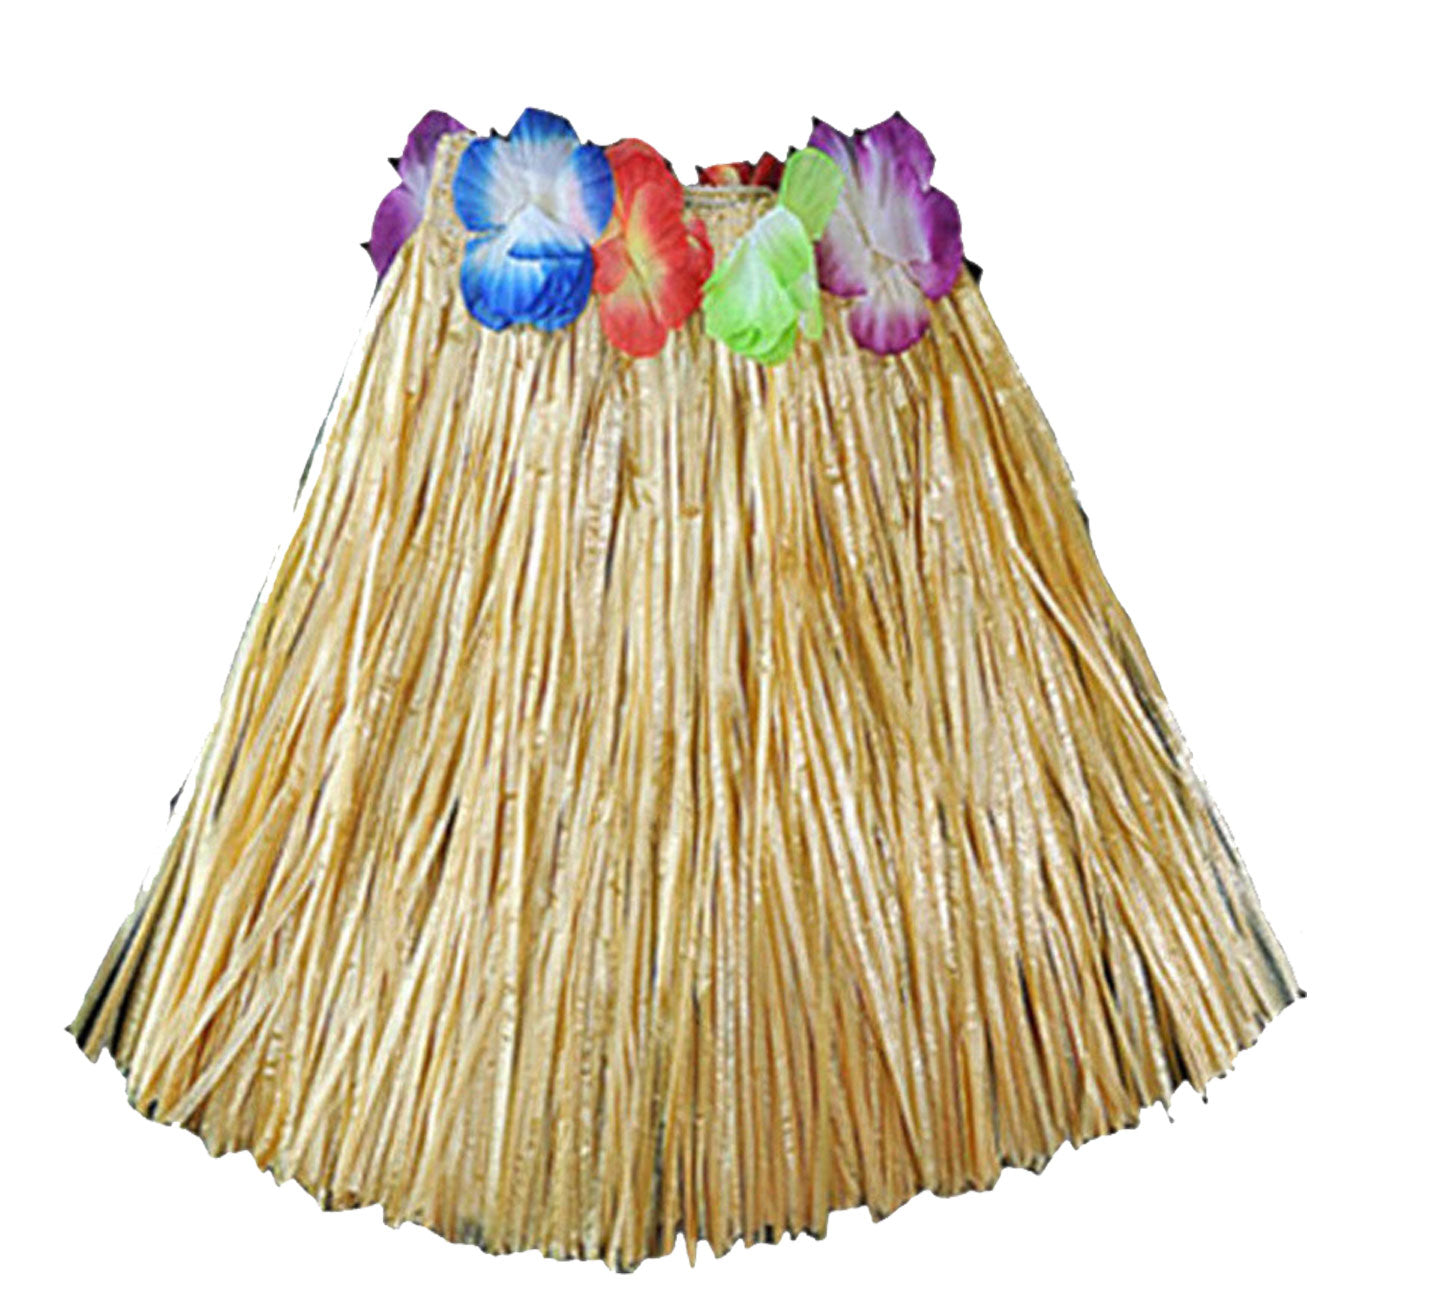 Hula Grass Skirt 40 Cm with Flower Bra Ladies Girls Hawaiian Summer Beach Party Fancy Dress Costume Set